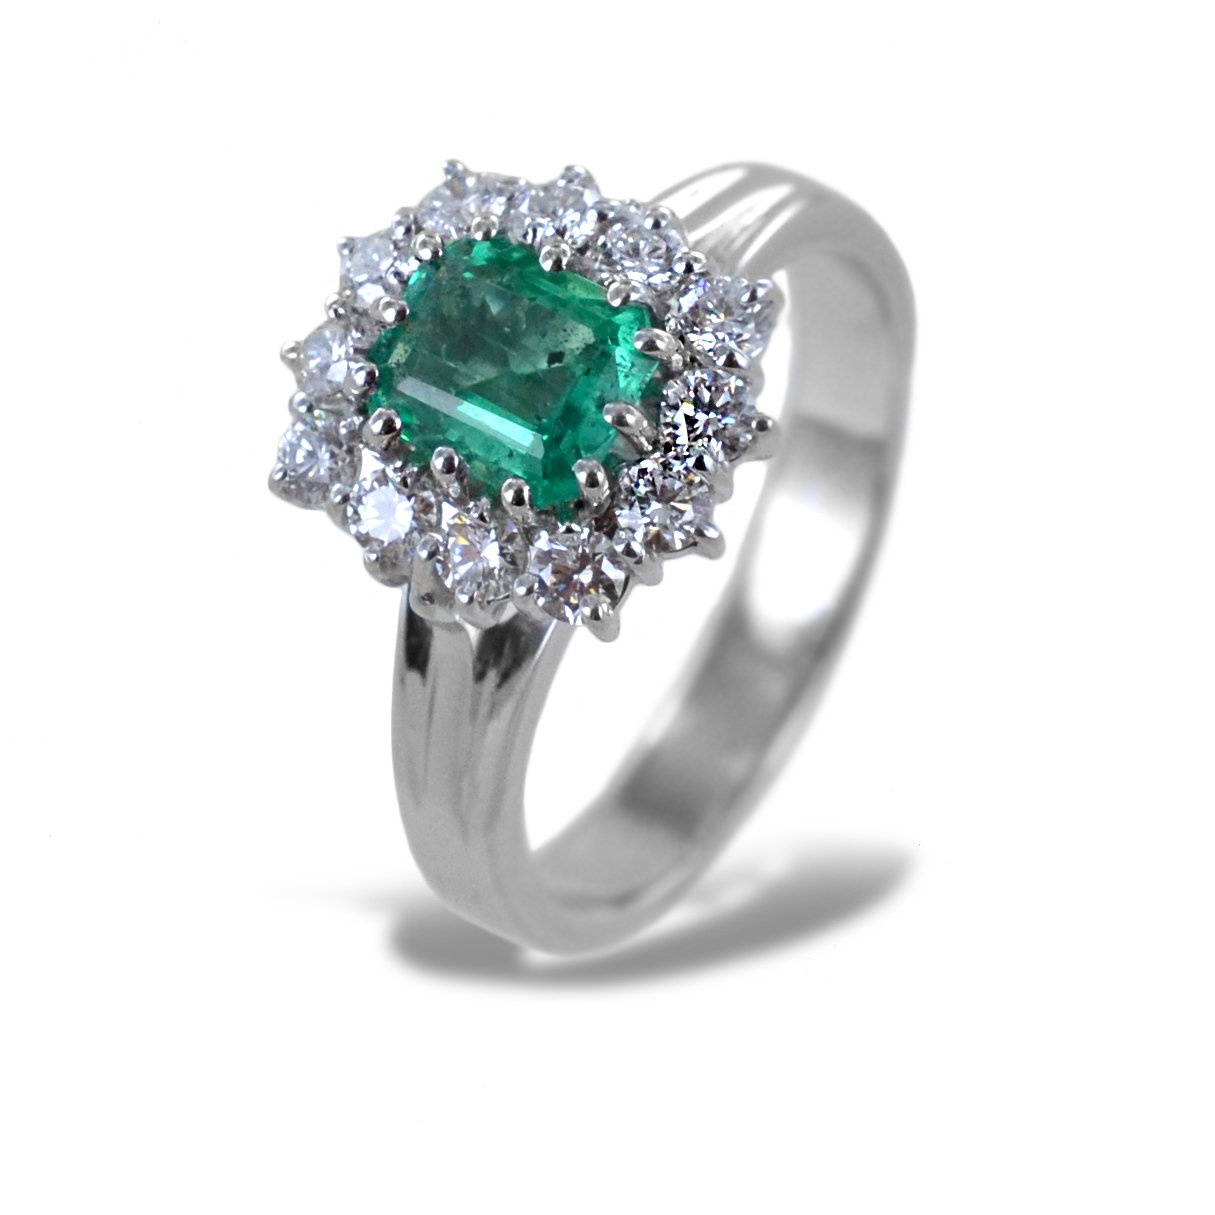 Anello rosetta Smeraldo da oltre mezzo carato e Diamanti